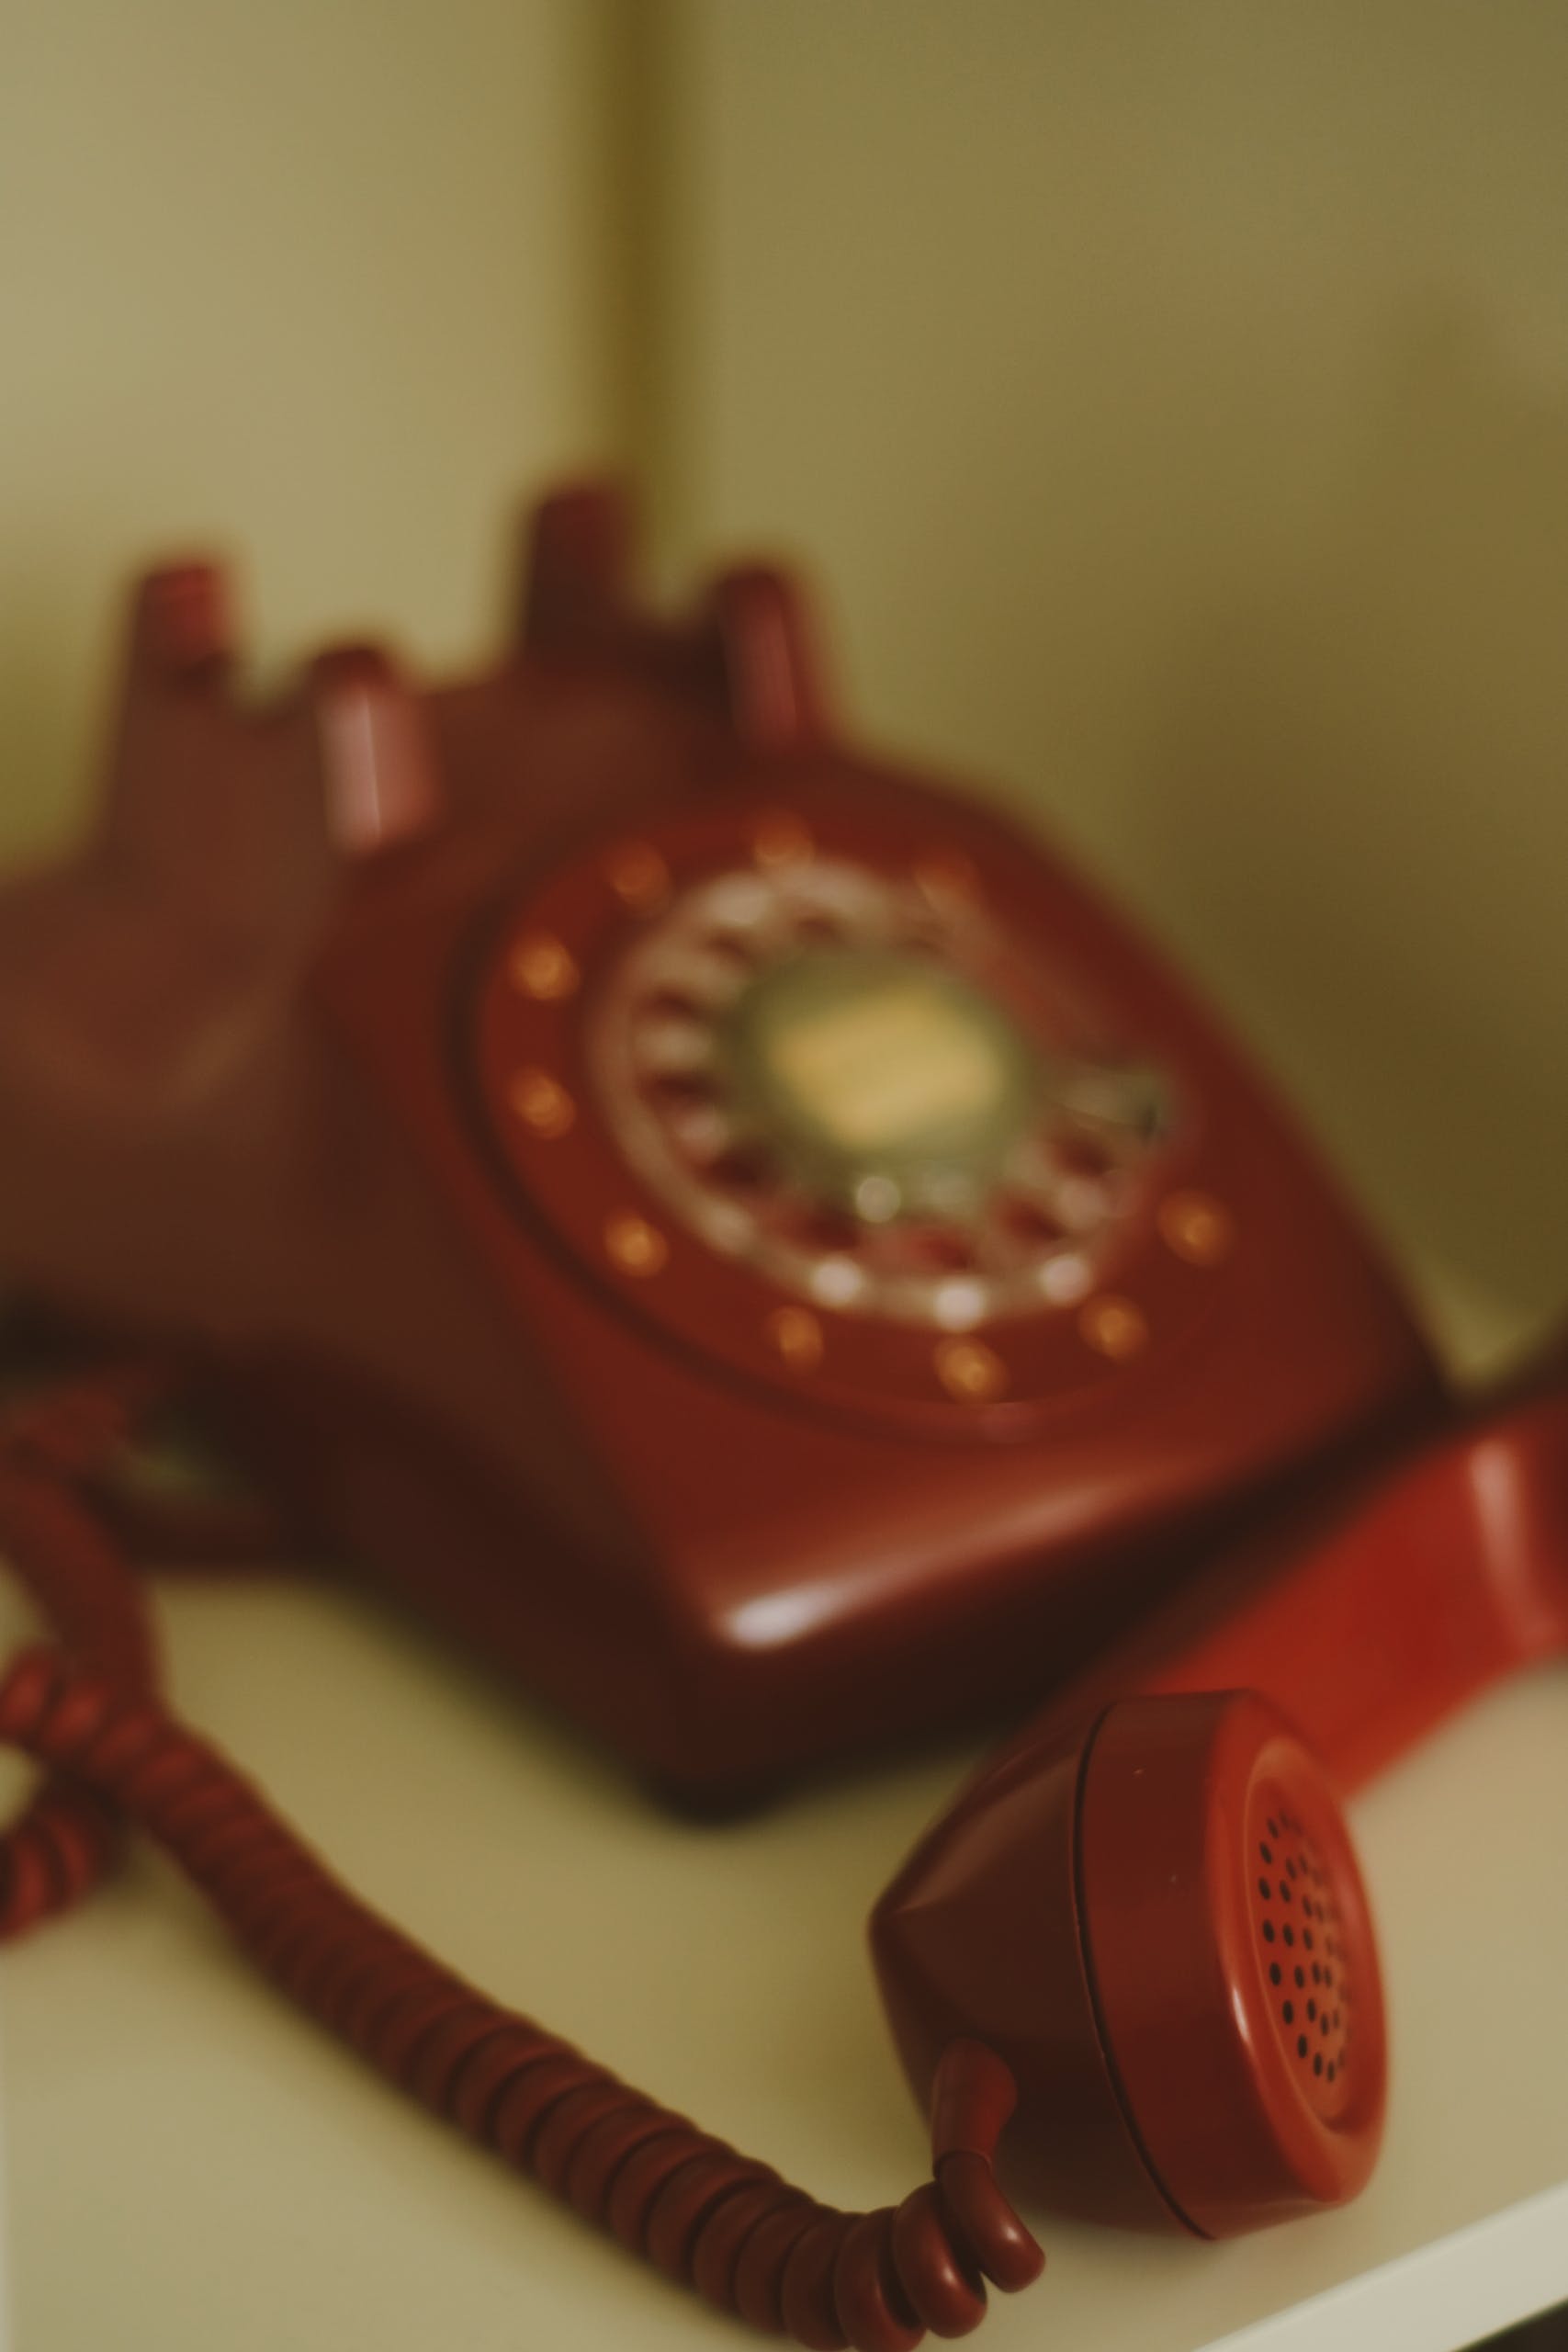 Teléfono antiguo | Fuente: Pexels